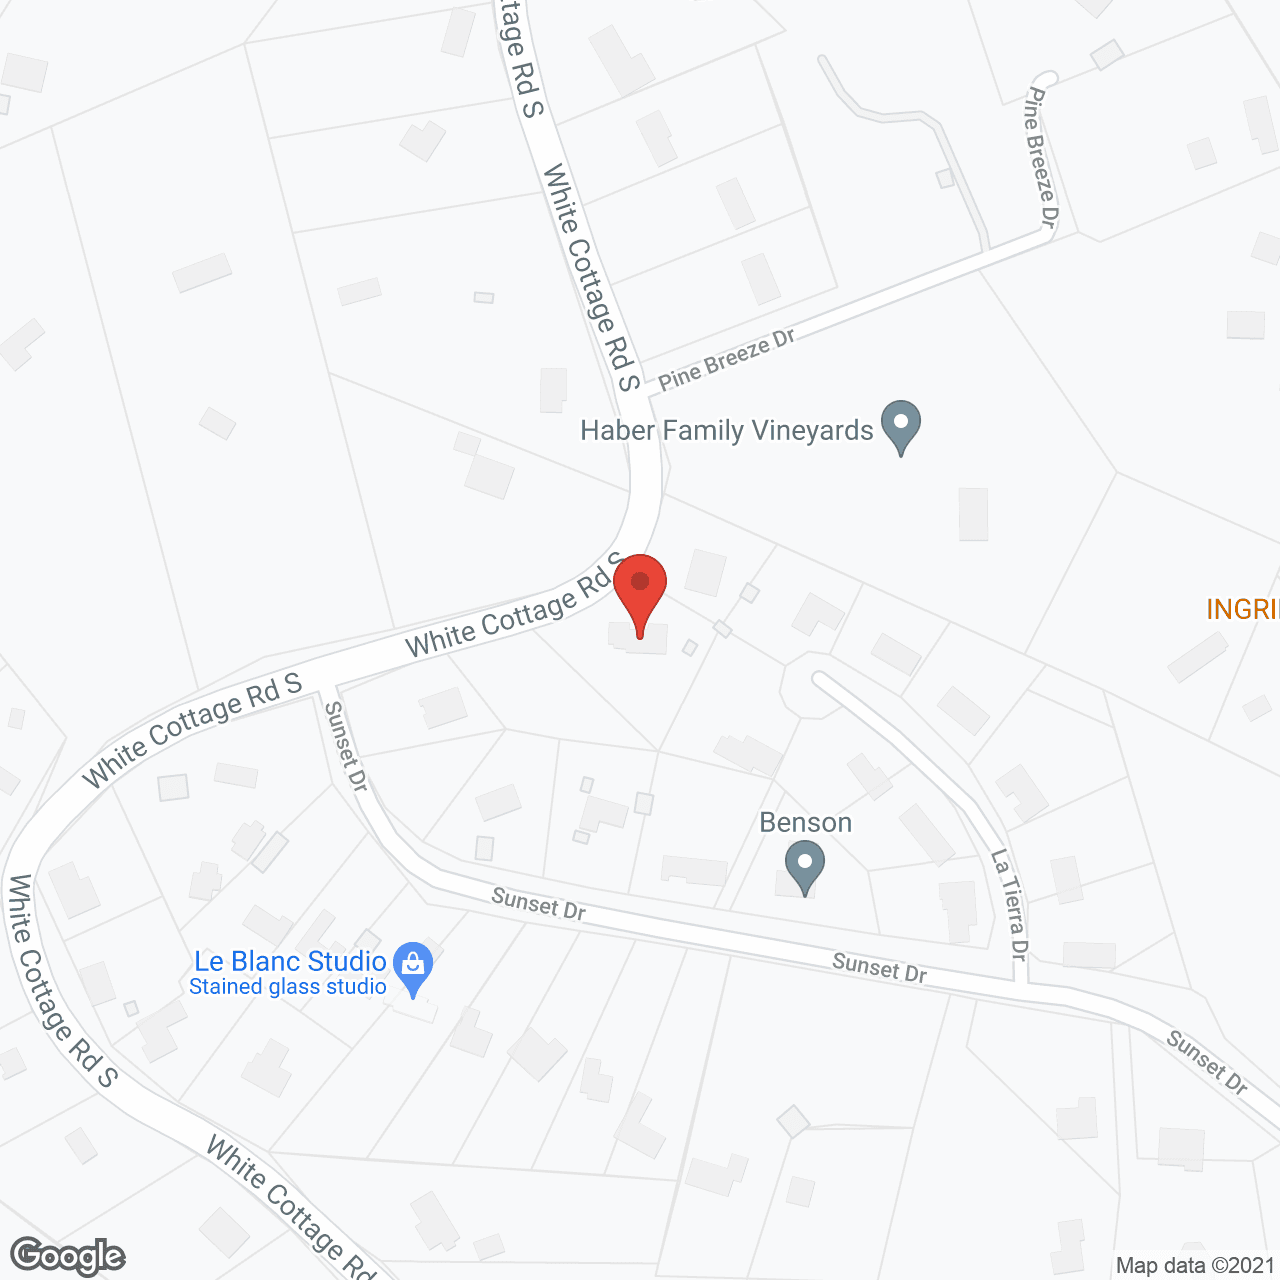 Woodside Senior Residence in google map